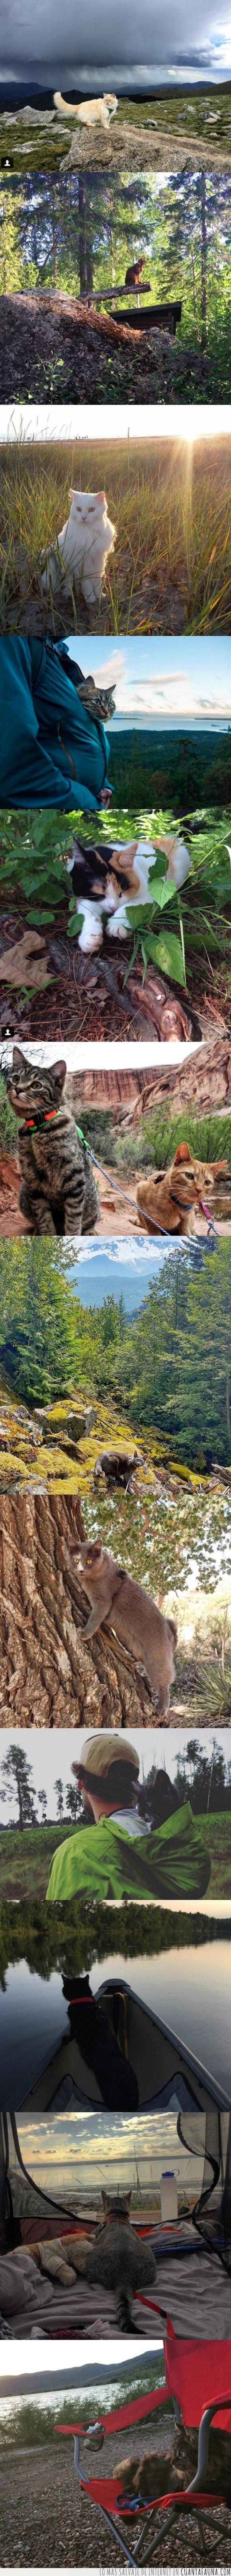 camping,gatos,pasear